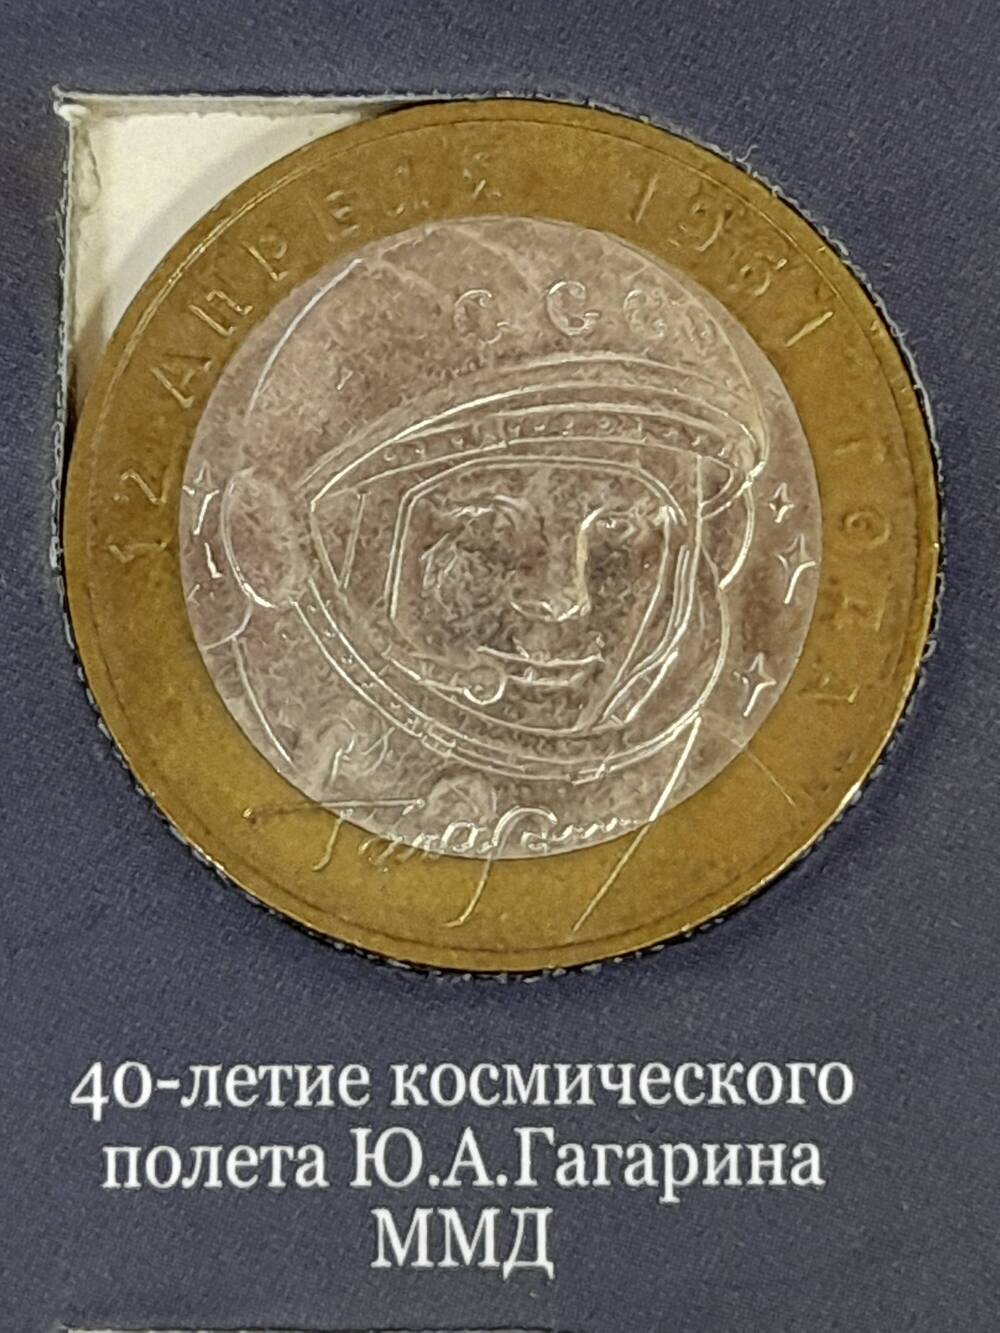 Монета памятная 10 РУБЛЕЙ. 40-летие космического полета Ю.А.Гагарина 2001 г. Россия